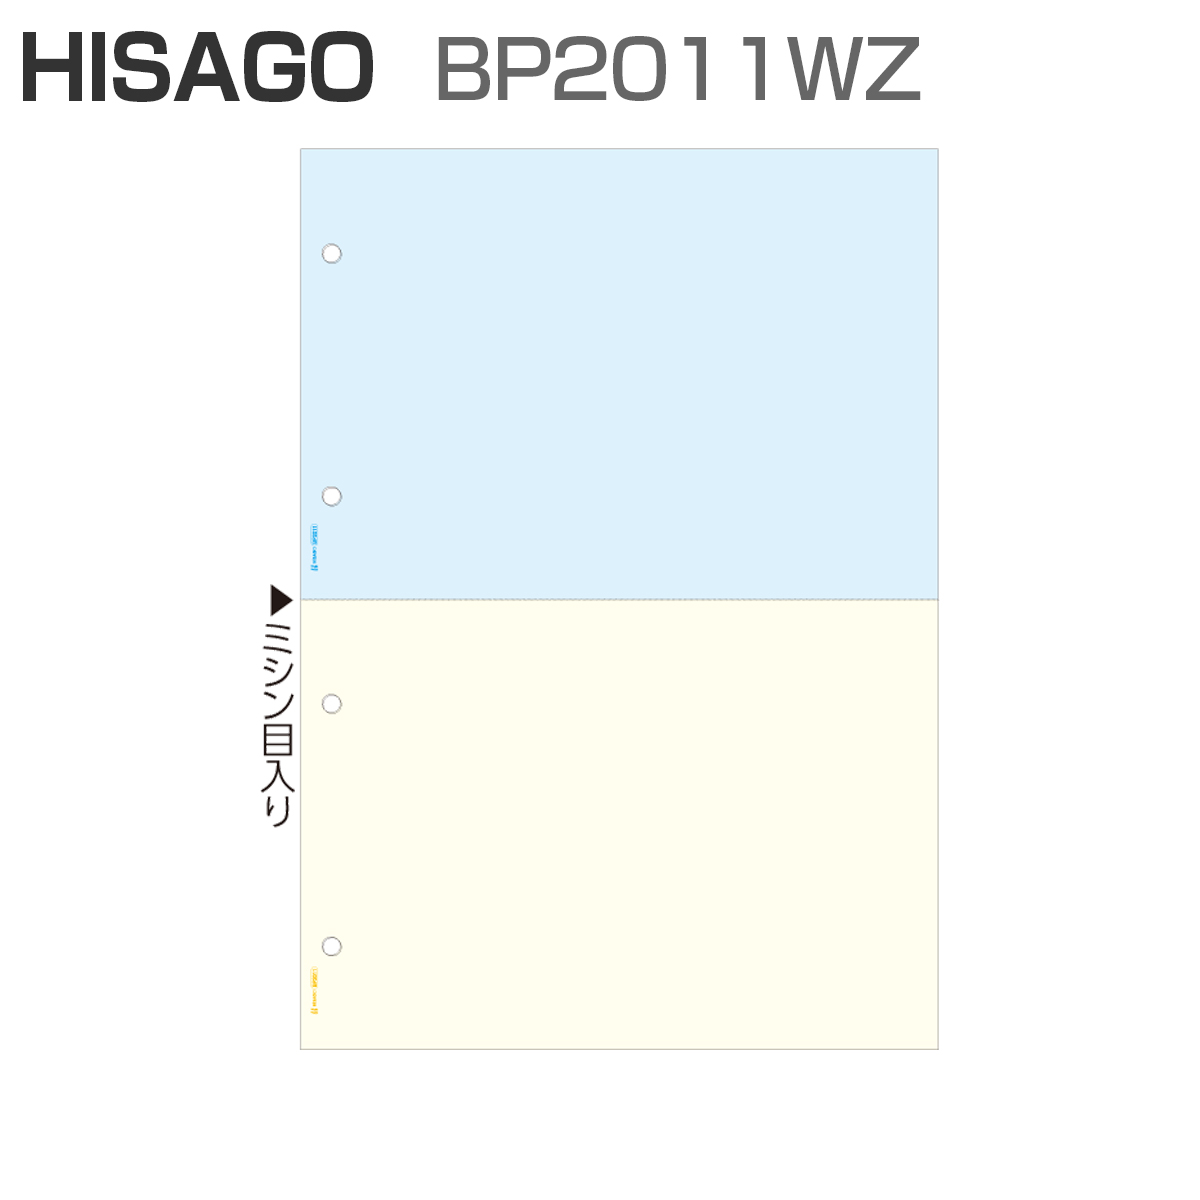 ヒサゴ BP2011WZ マルチプリンタ帳票 A4 カラー 2面 4穴 (2,400枚)